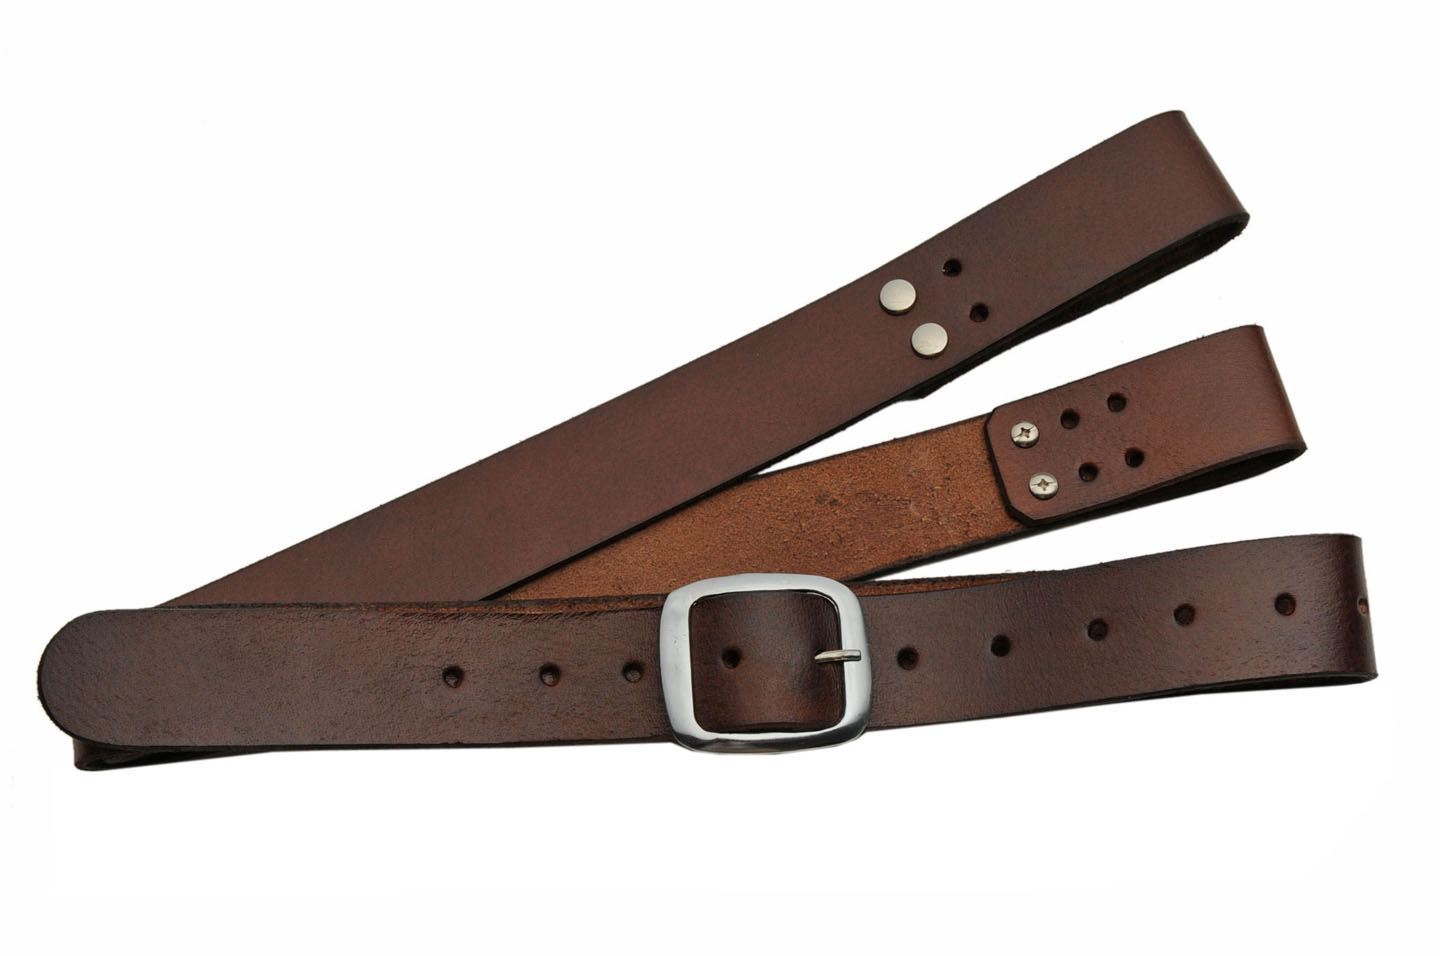 Adjustable Shoulder Belt Harness For Medieval/Samurai Swords - Brown Leather